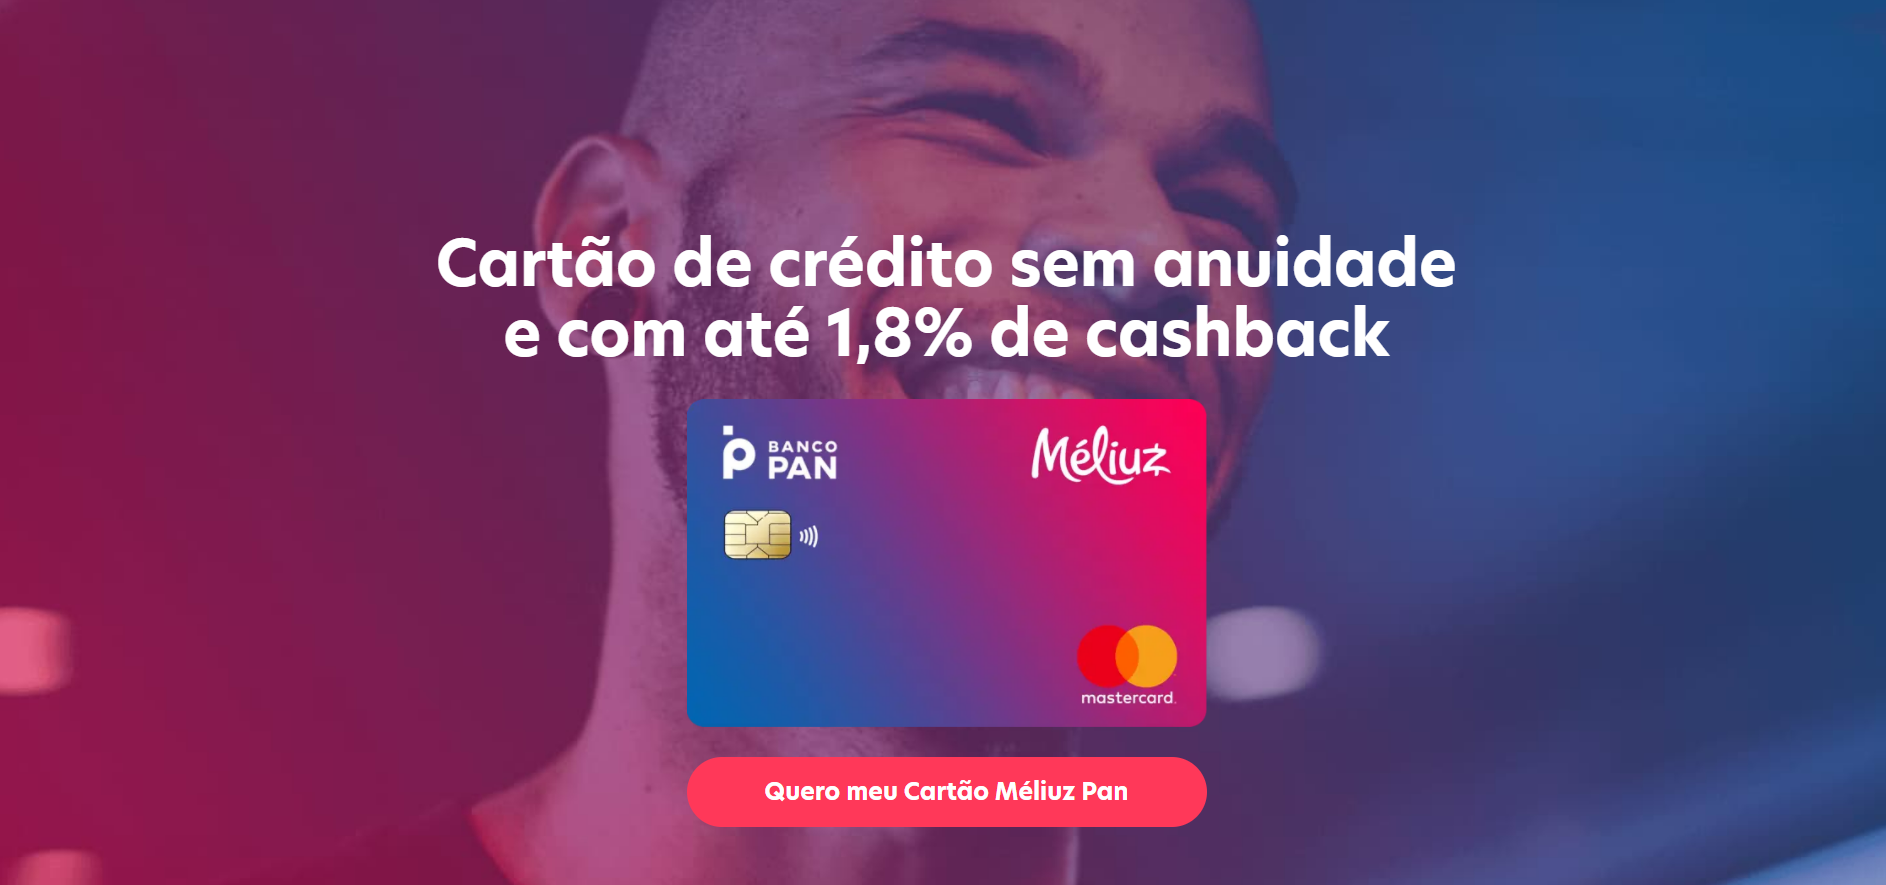 O cartão Méliuz oferece cashback de até 1,8% diretamente na sua conta bancária. Fonte: Méliuz